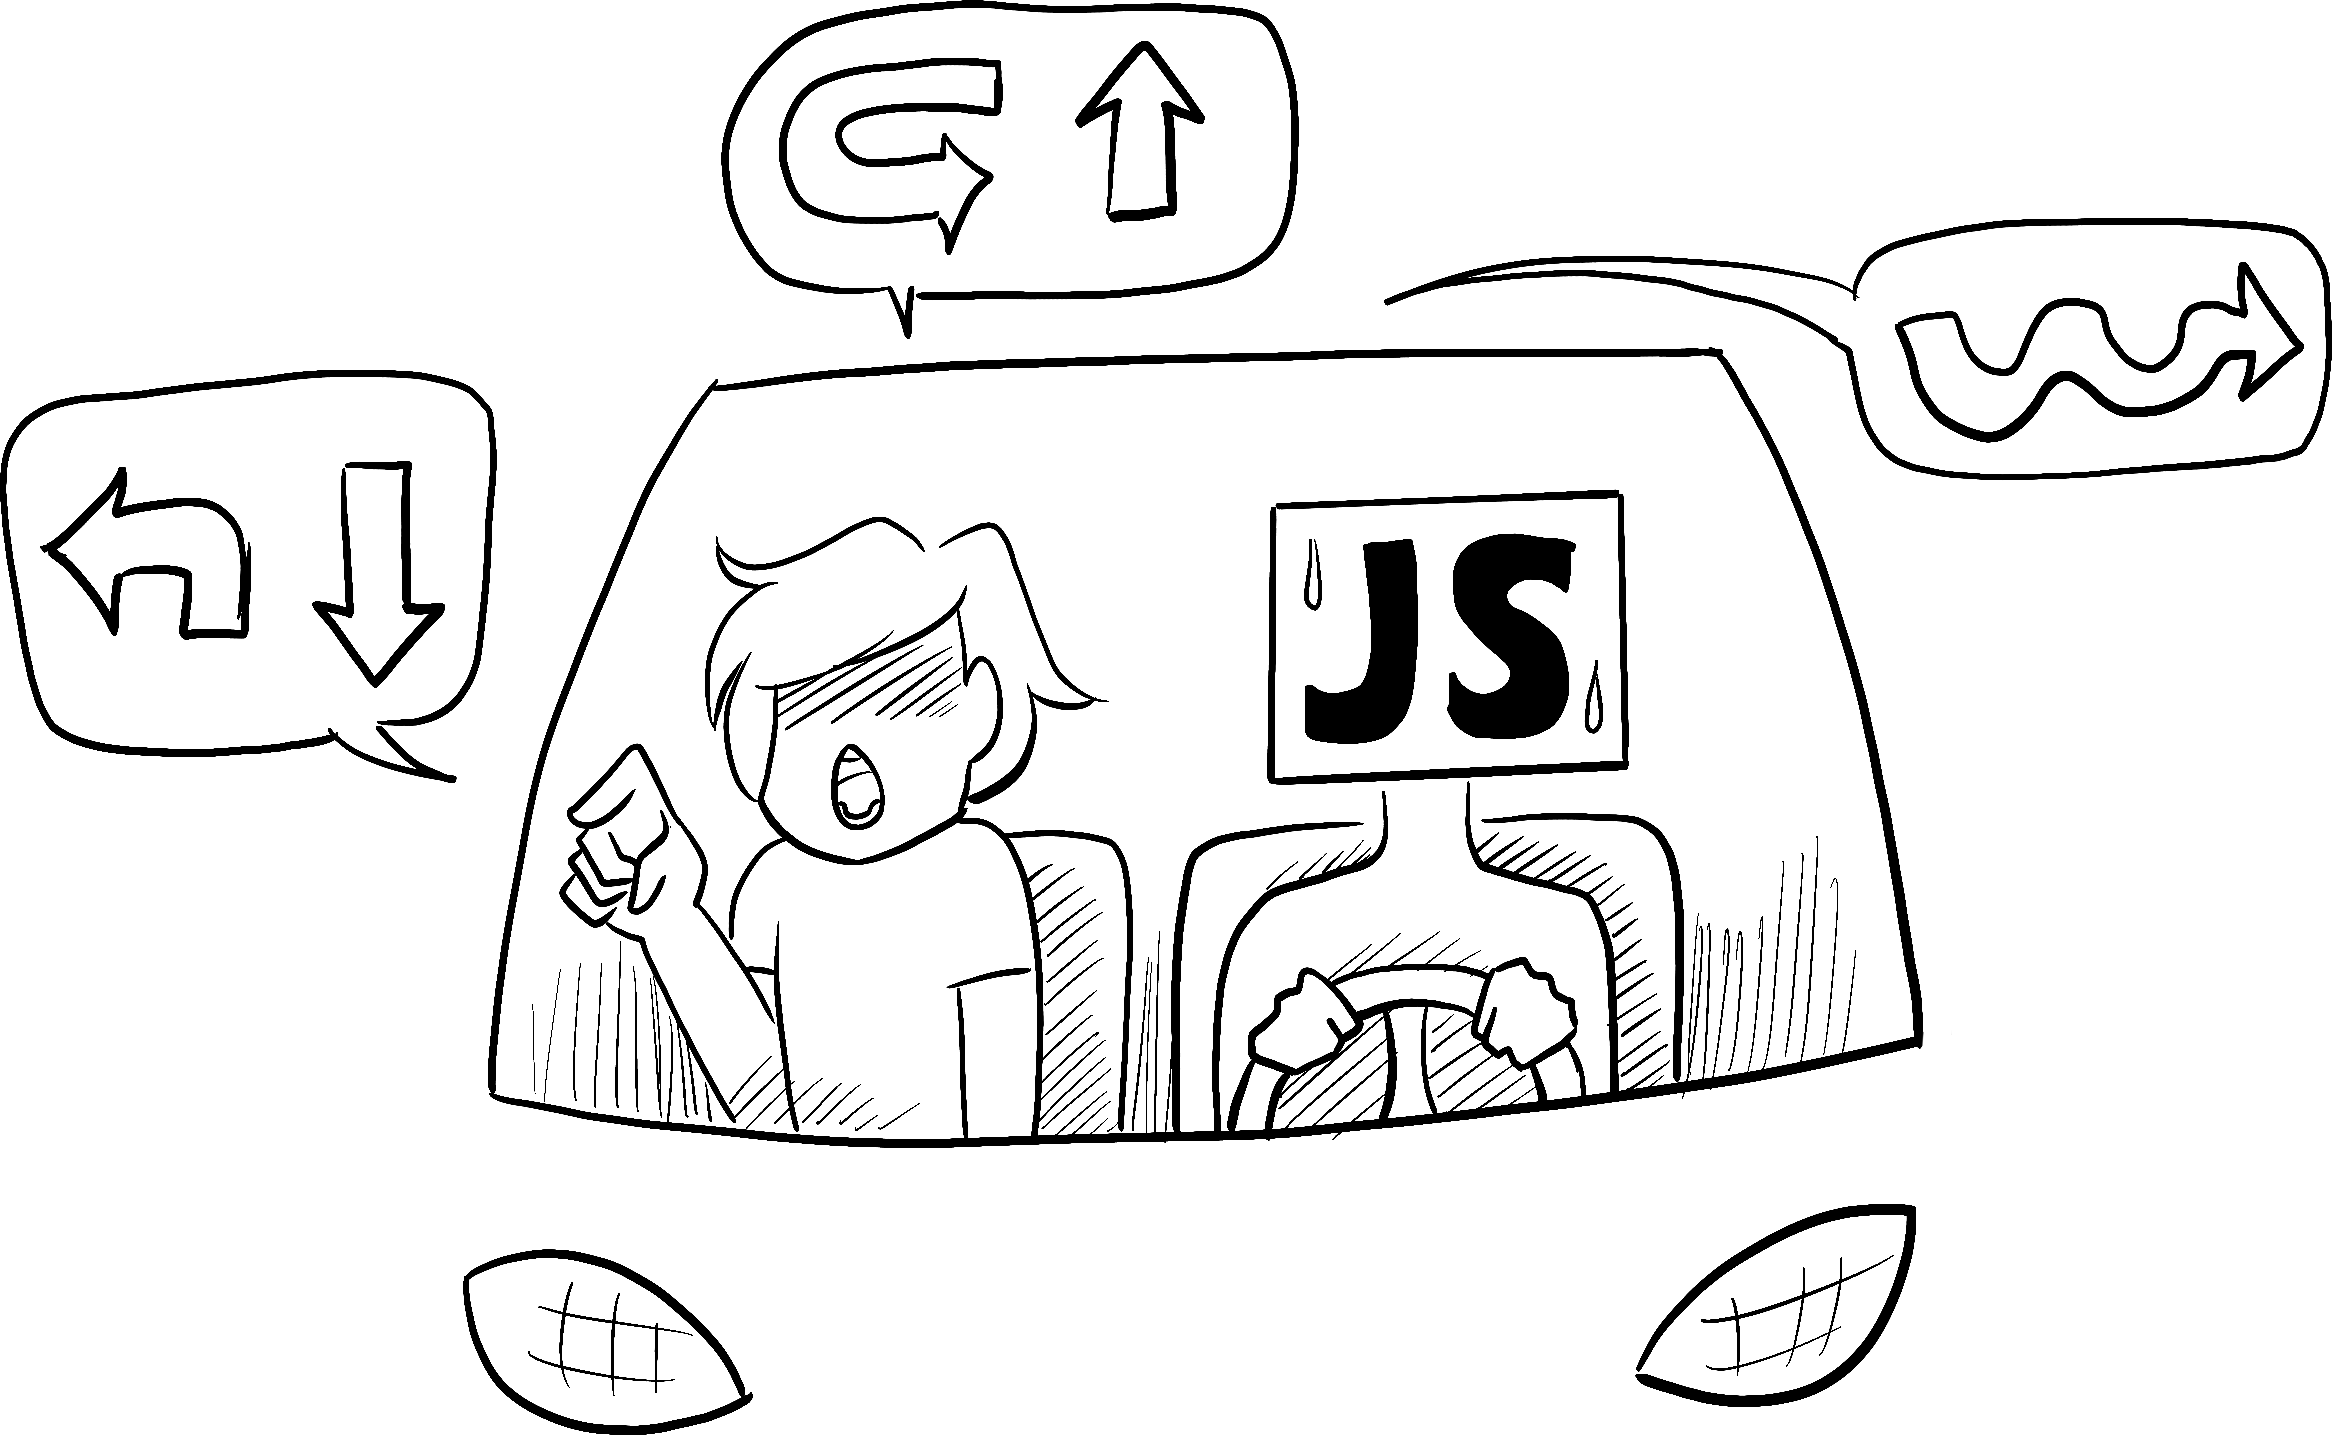 JavaScript'i temsil eden endişeli görünümlü bir kişi tarafından sürülen bir arabada, bir yolcu sürücüye bir dizi karmaşık dönüşü gerçekleştirmesini emreder.